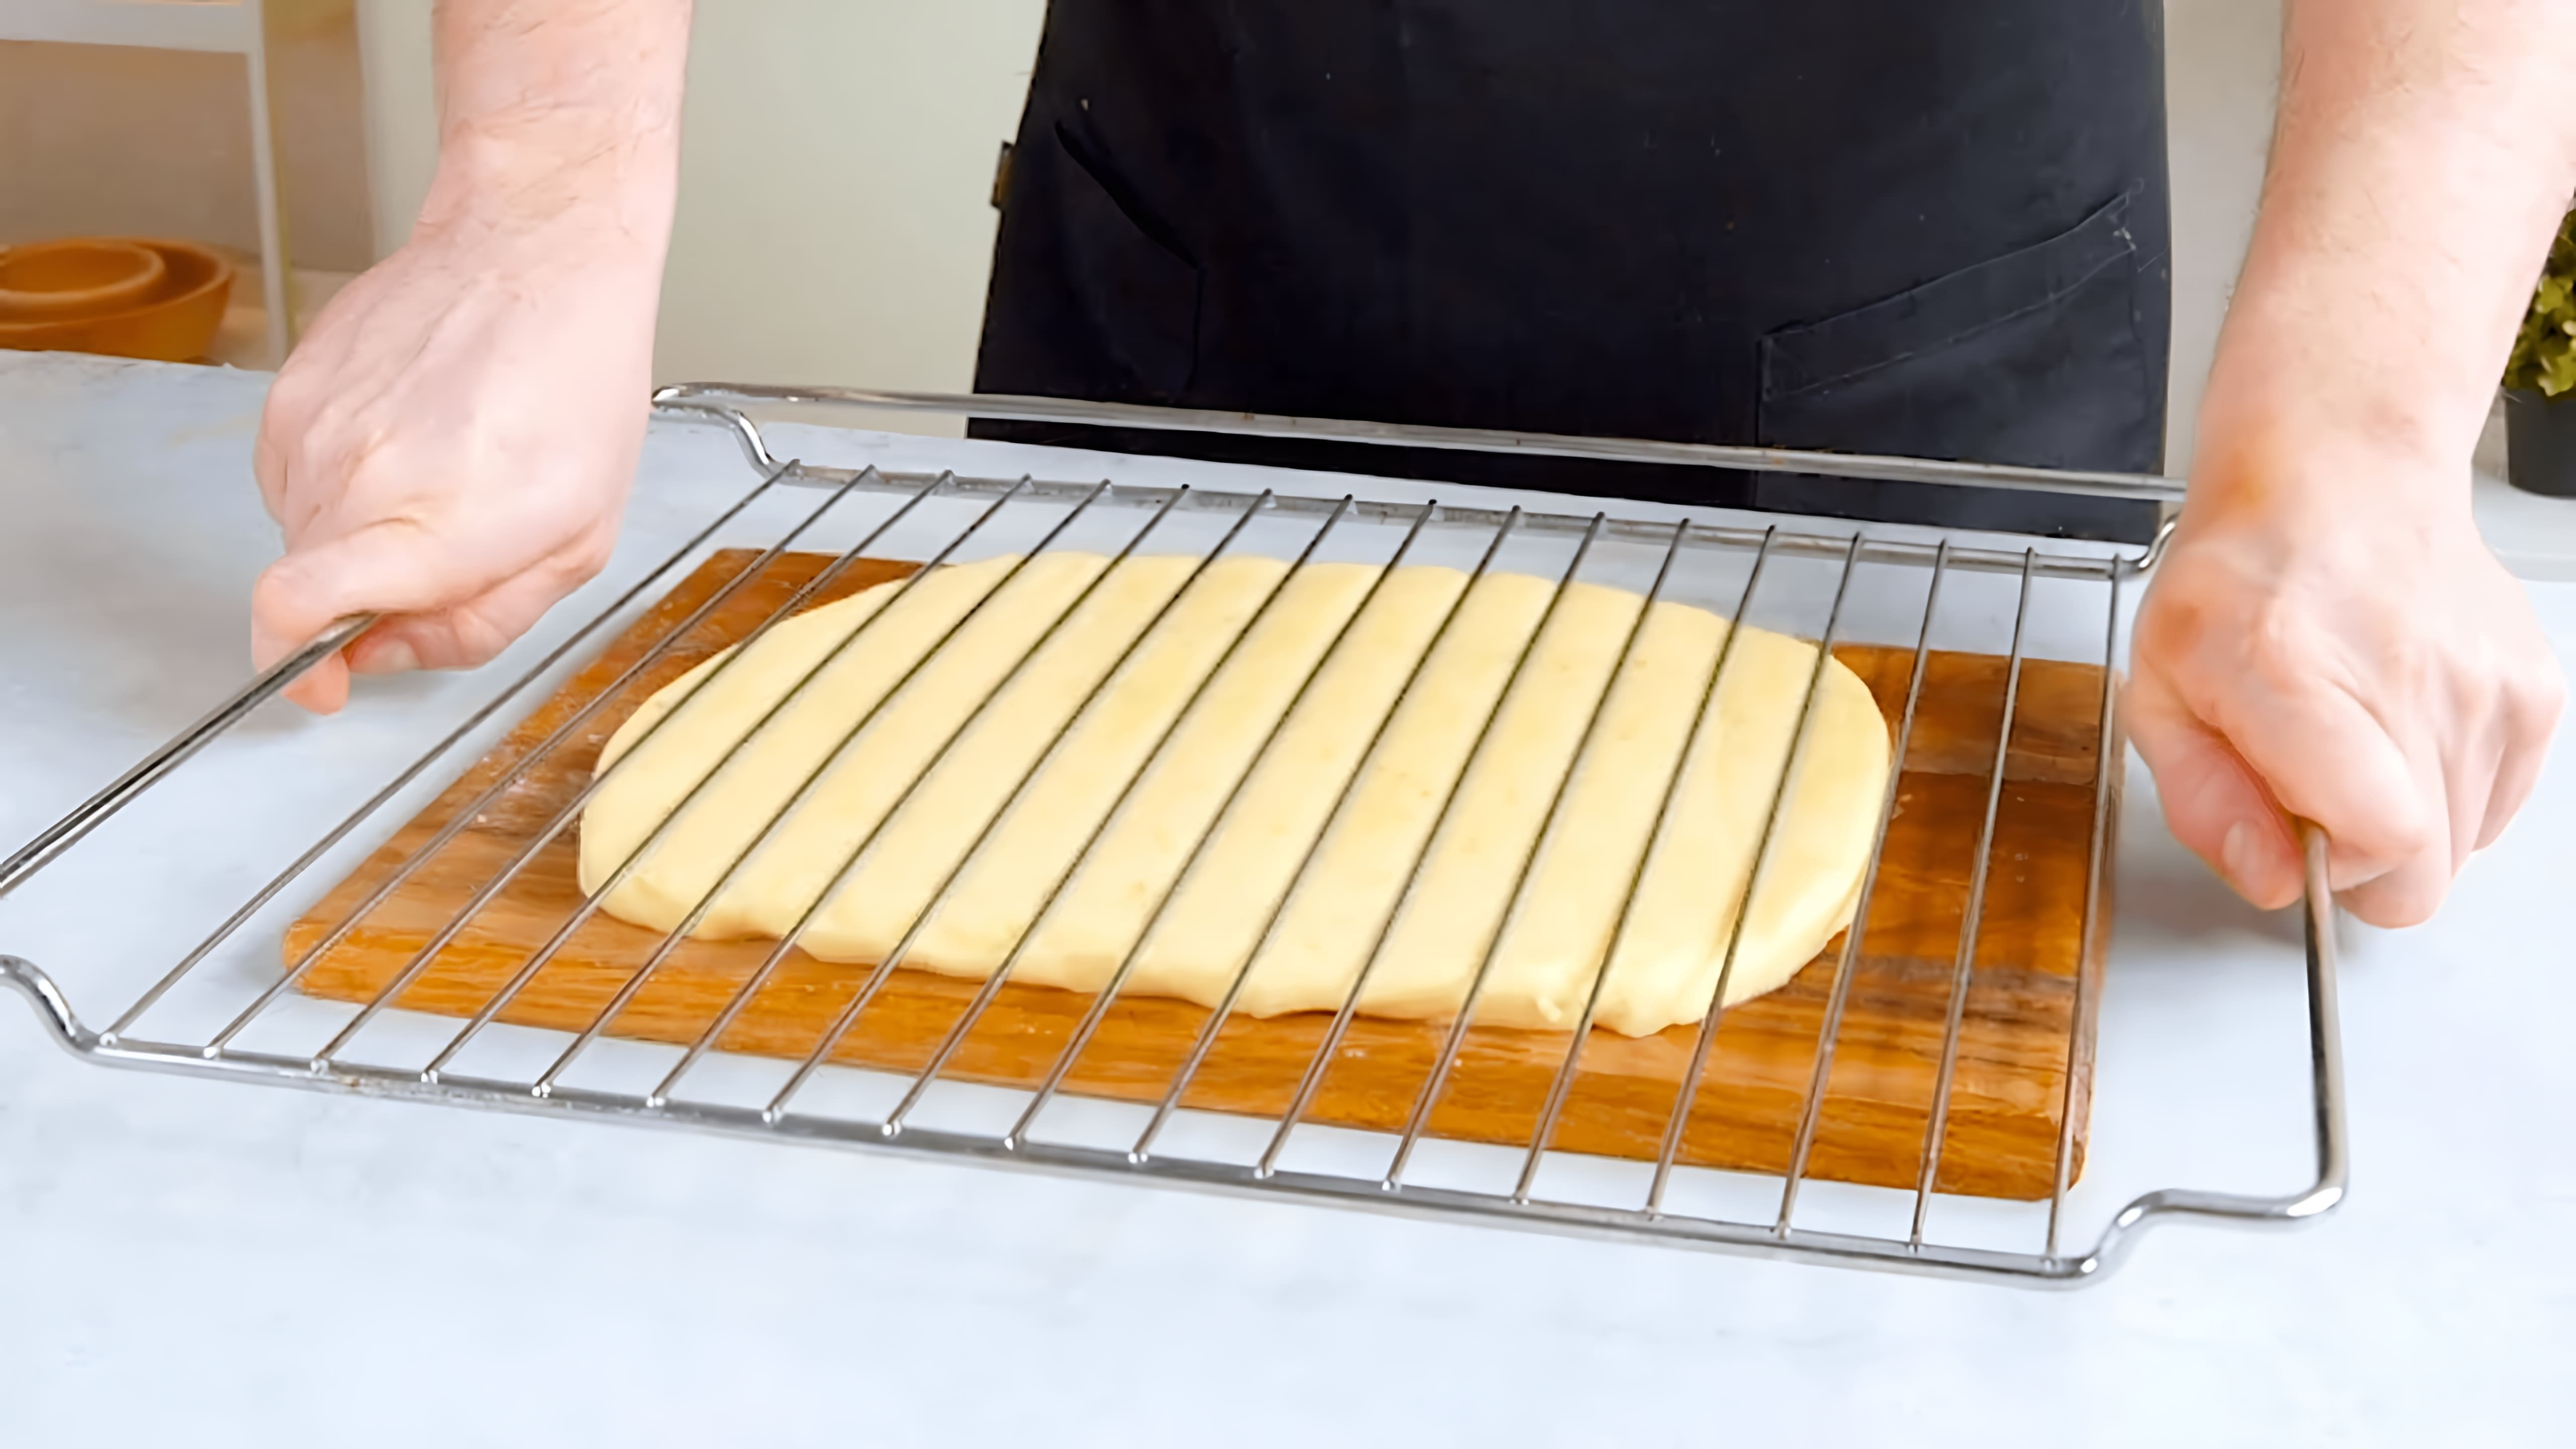 В этом видео-ролике мы увидим, как из обычного пюре можно приготовить роскошные закуски, которые не оставят равнодушными даже самых требовательных гурманов